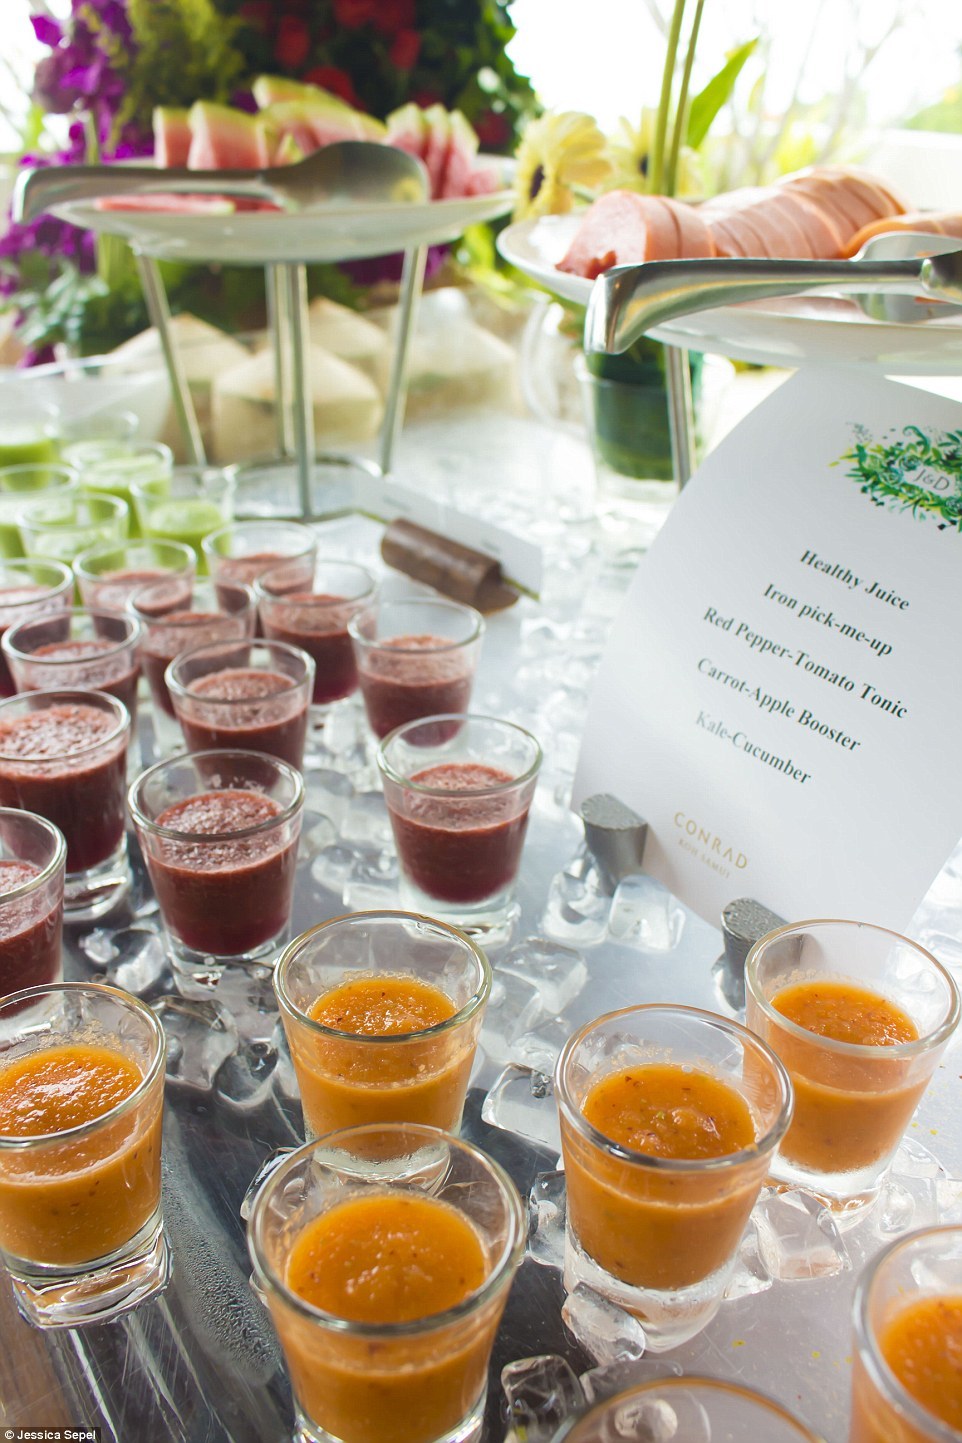 Невеста-диетолог 4 дня кормила 170 гостей свадьбы исключительно здоровой пищей 